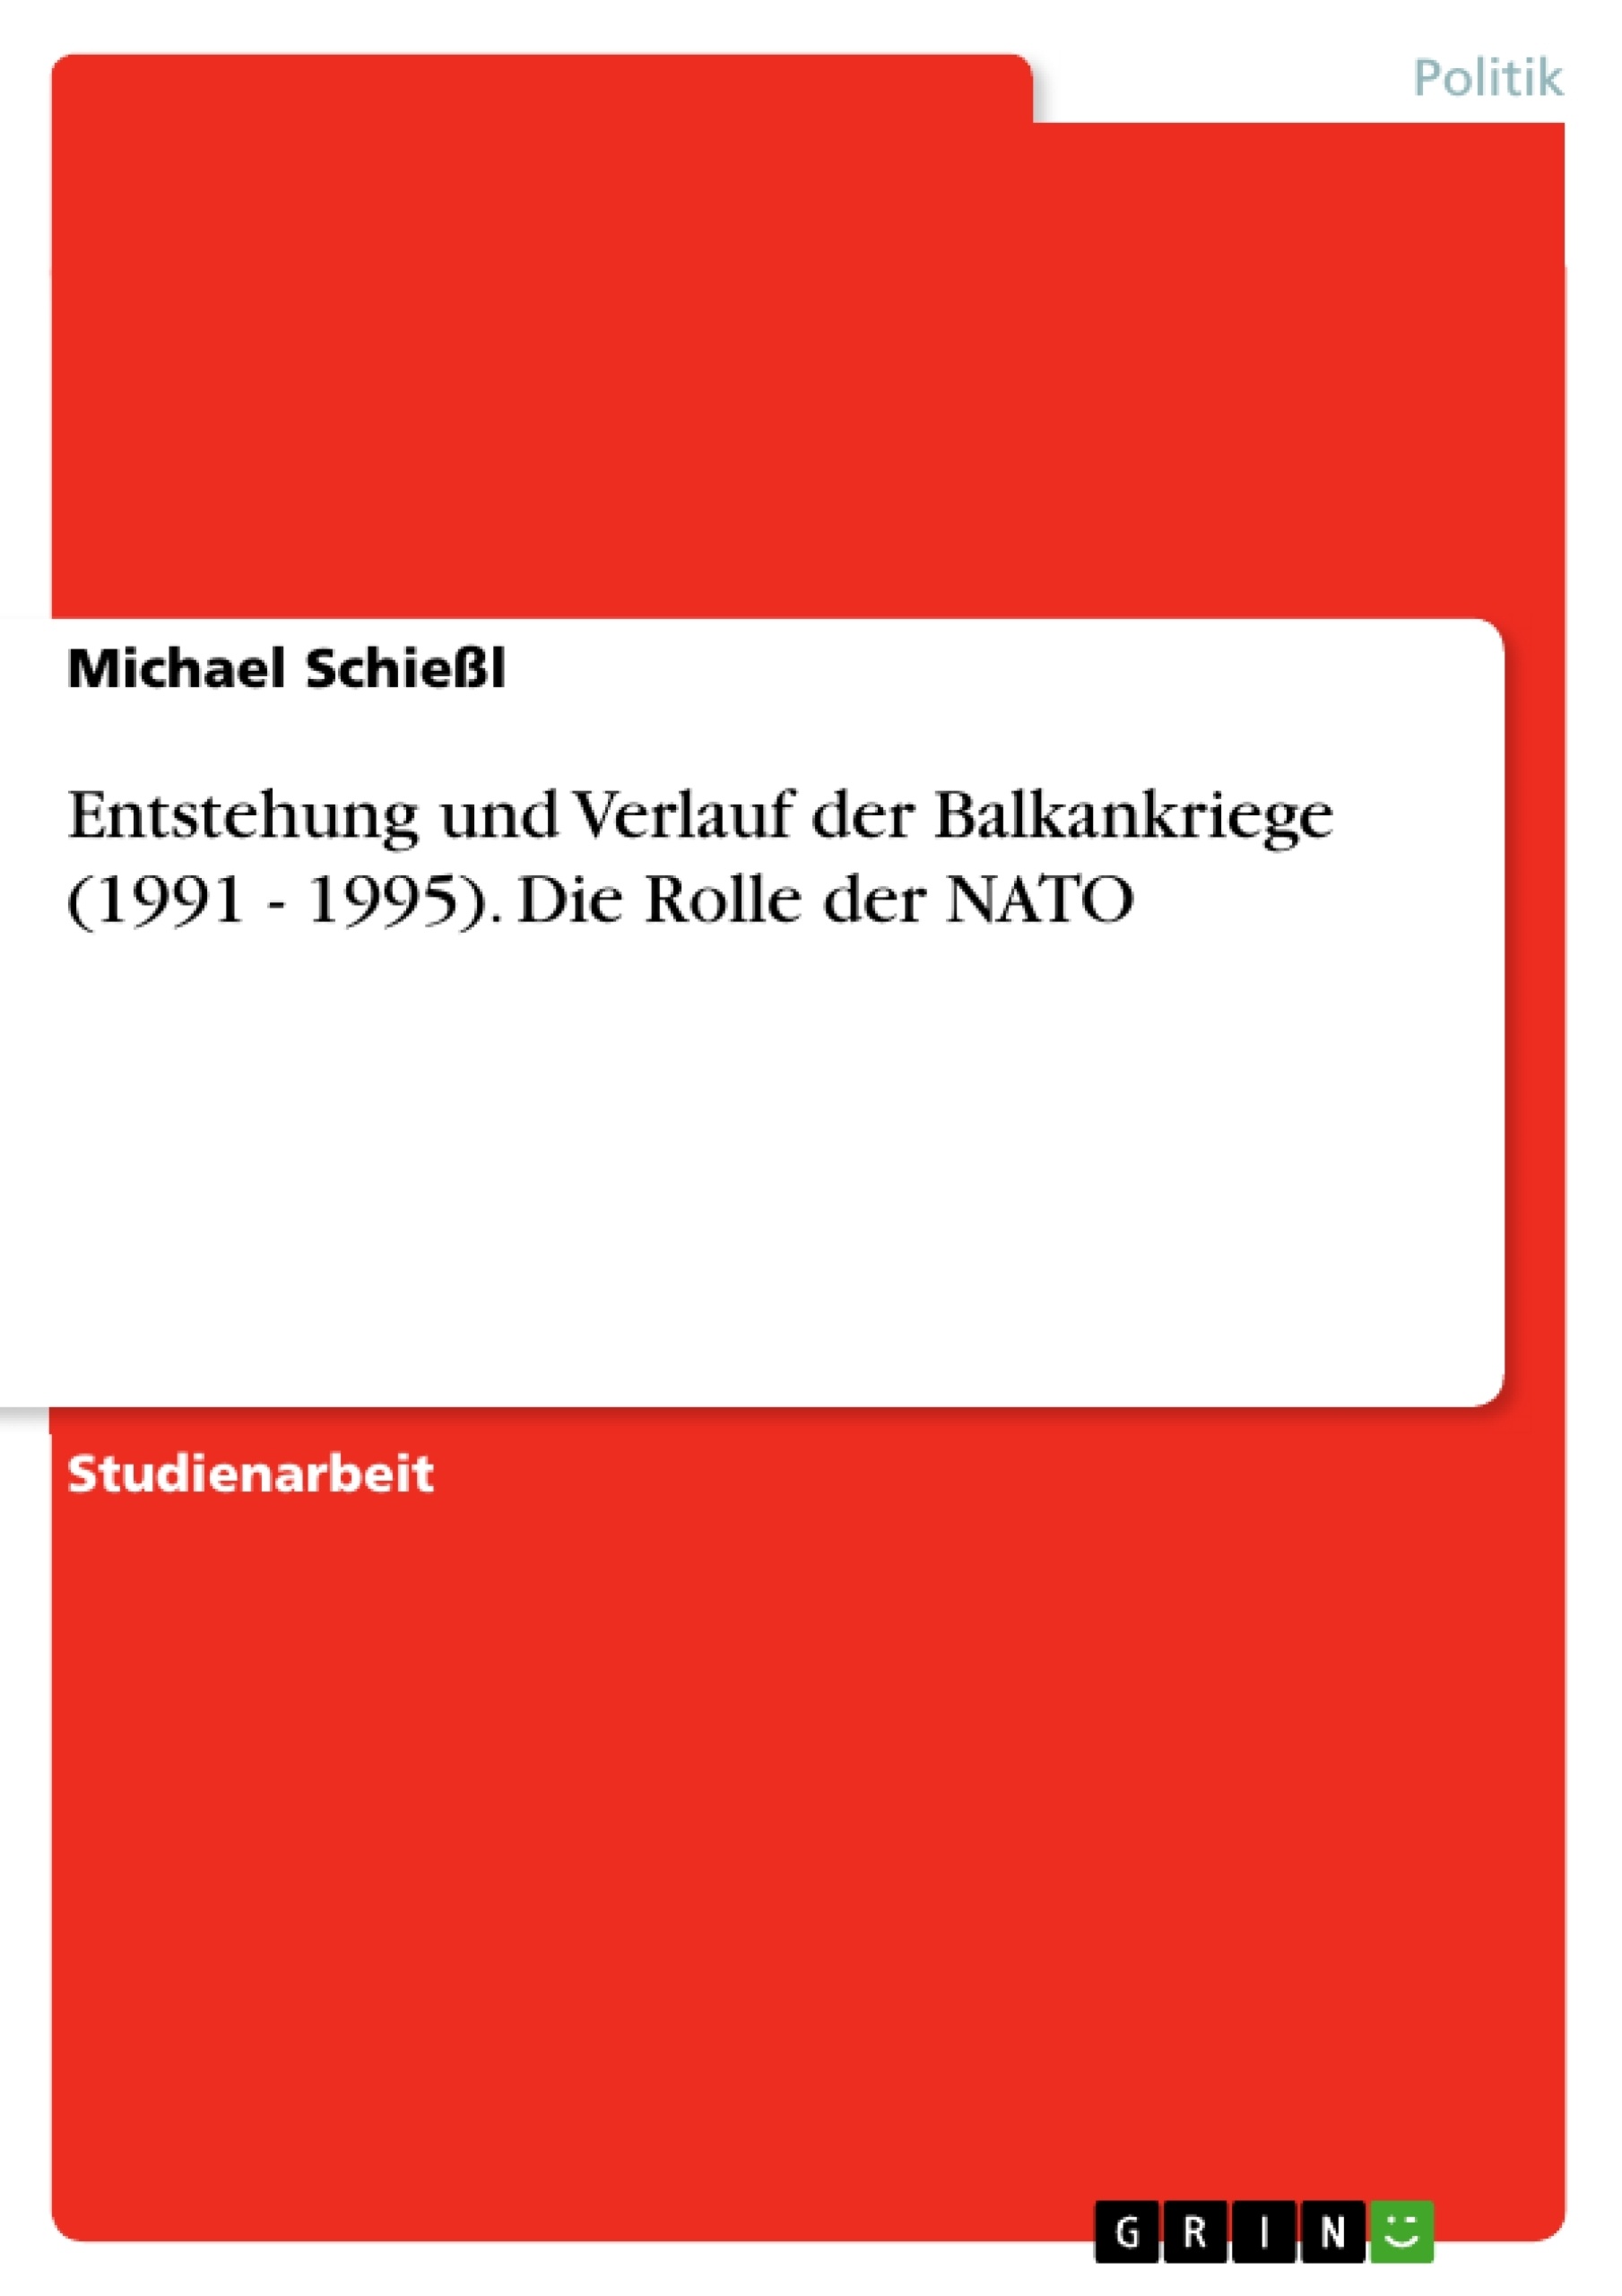 Título: Entstehung und Verlauf der Balkankriege (1991 - 1995). Die Rolle der NATO